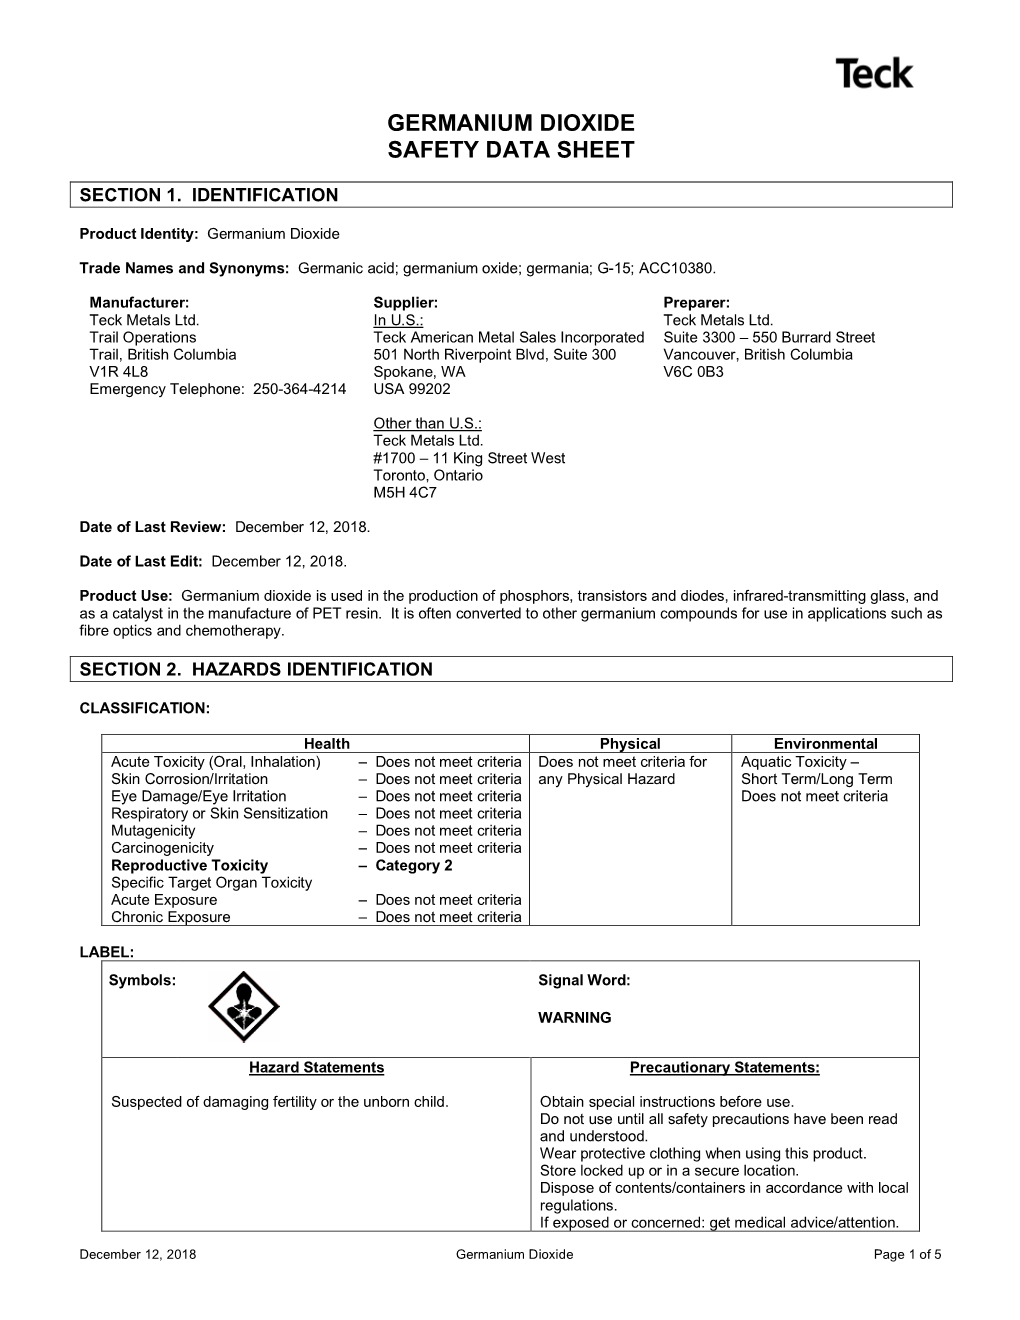 Germanium Dioxide Safety Data Sheet